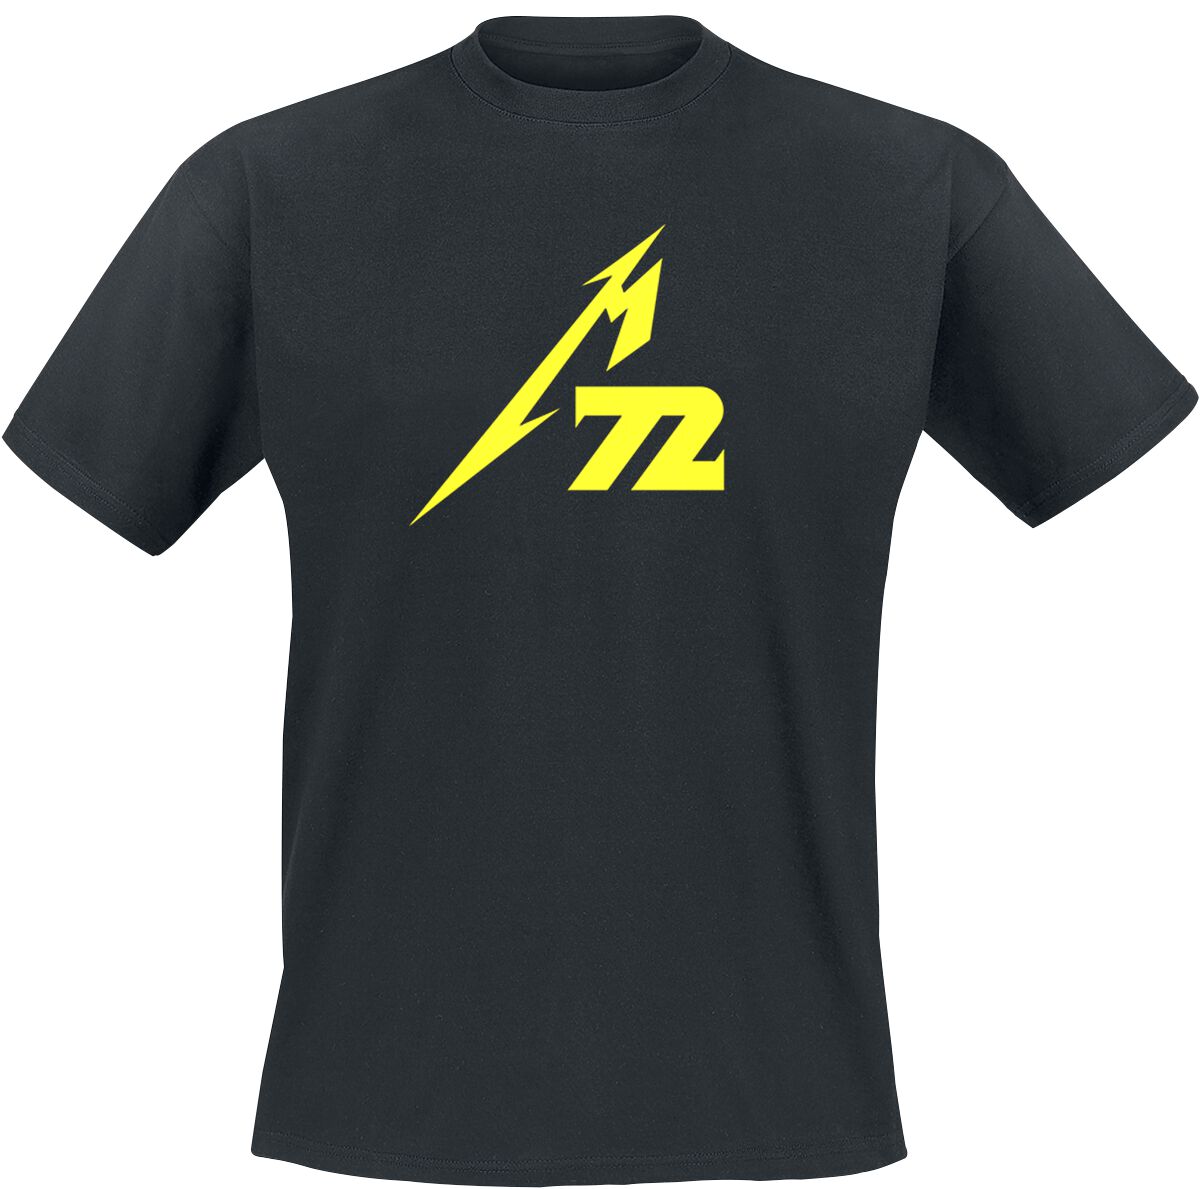 Metallica T-Shirt - Strobes (M72) - M bis 5XL - für Männer - Größe 3XL - schwarz  - Lizenziertes Merchandise!